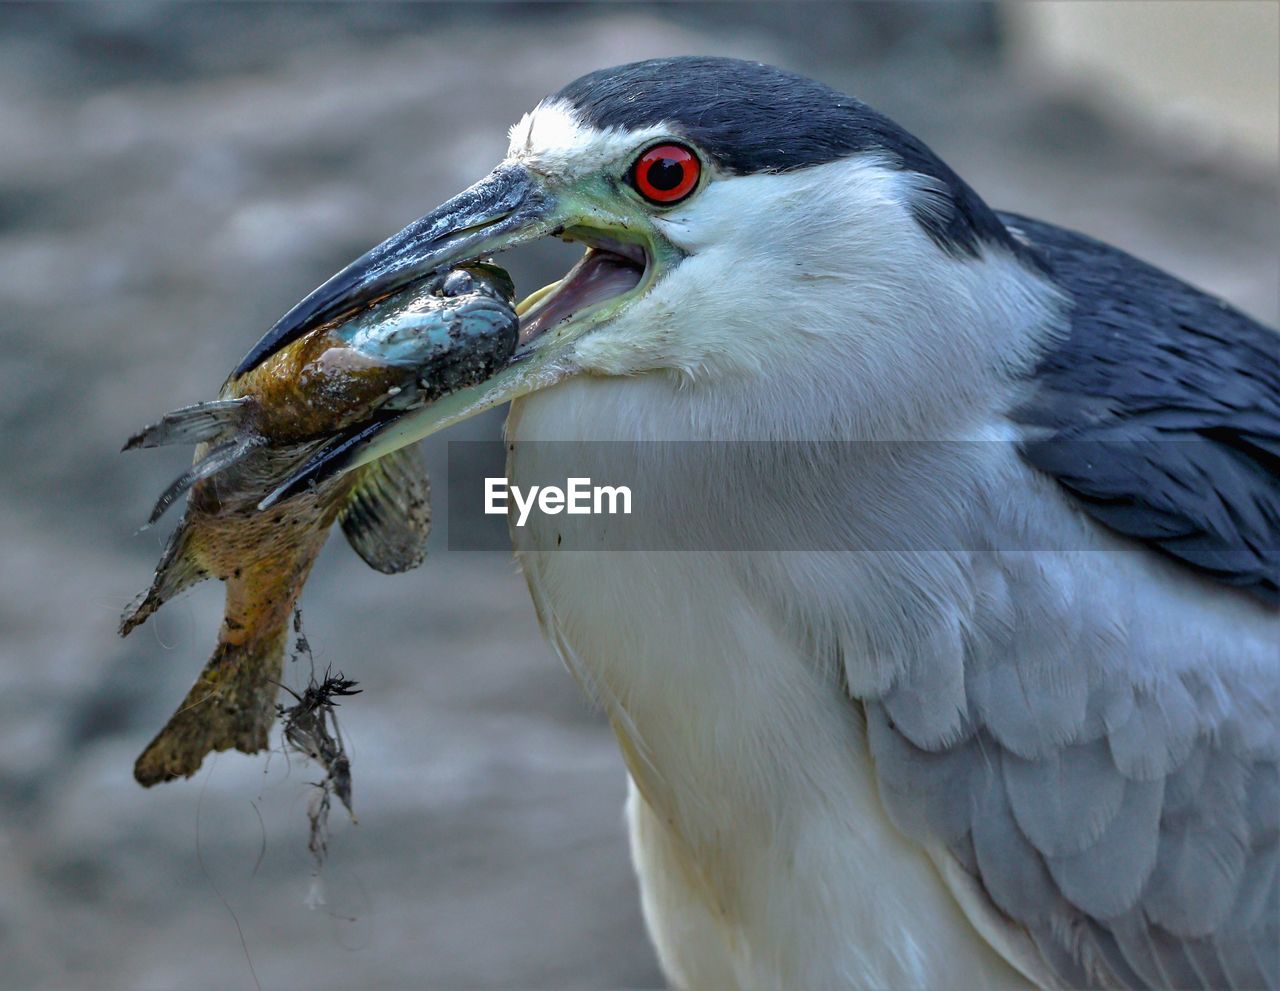 Close-up of bird with fish